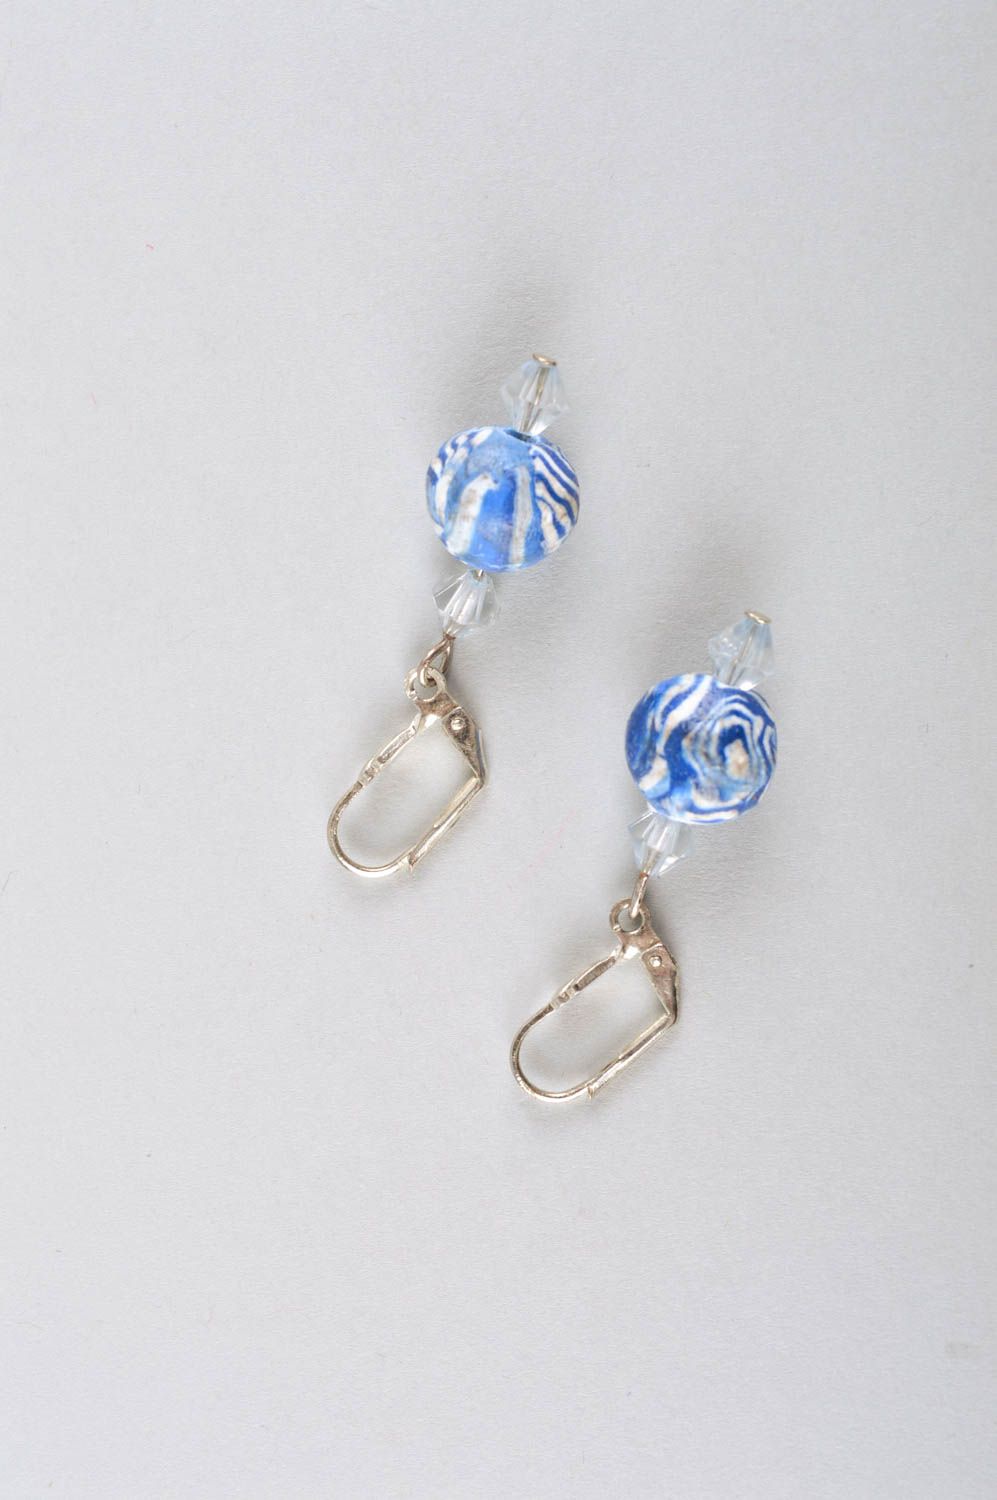 Handmade jewelry set wrist bracelet dangling earrings unique keychain gift ideas photo 5